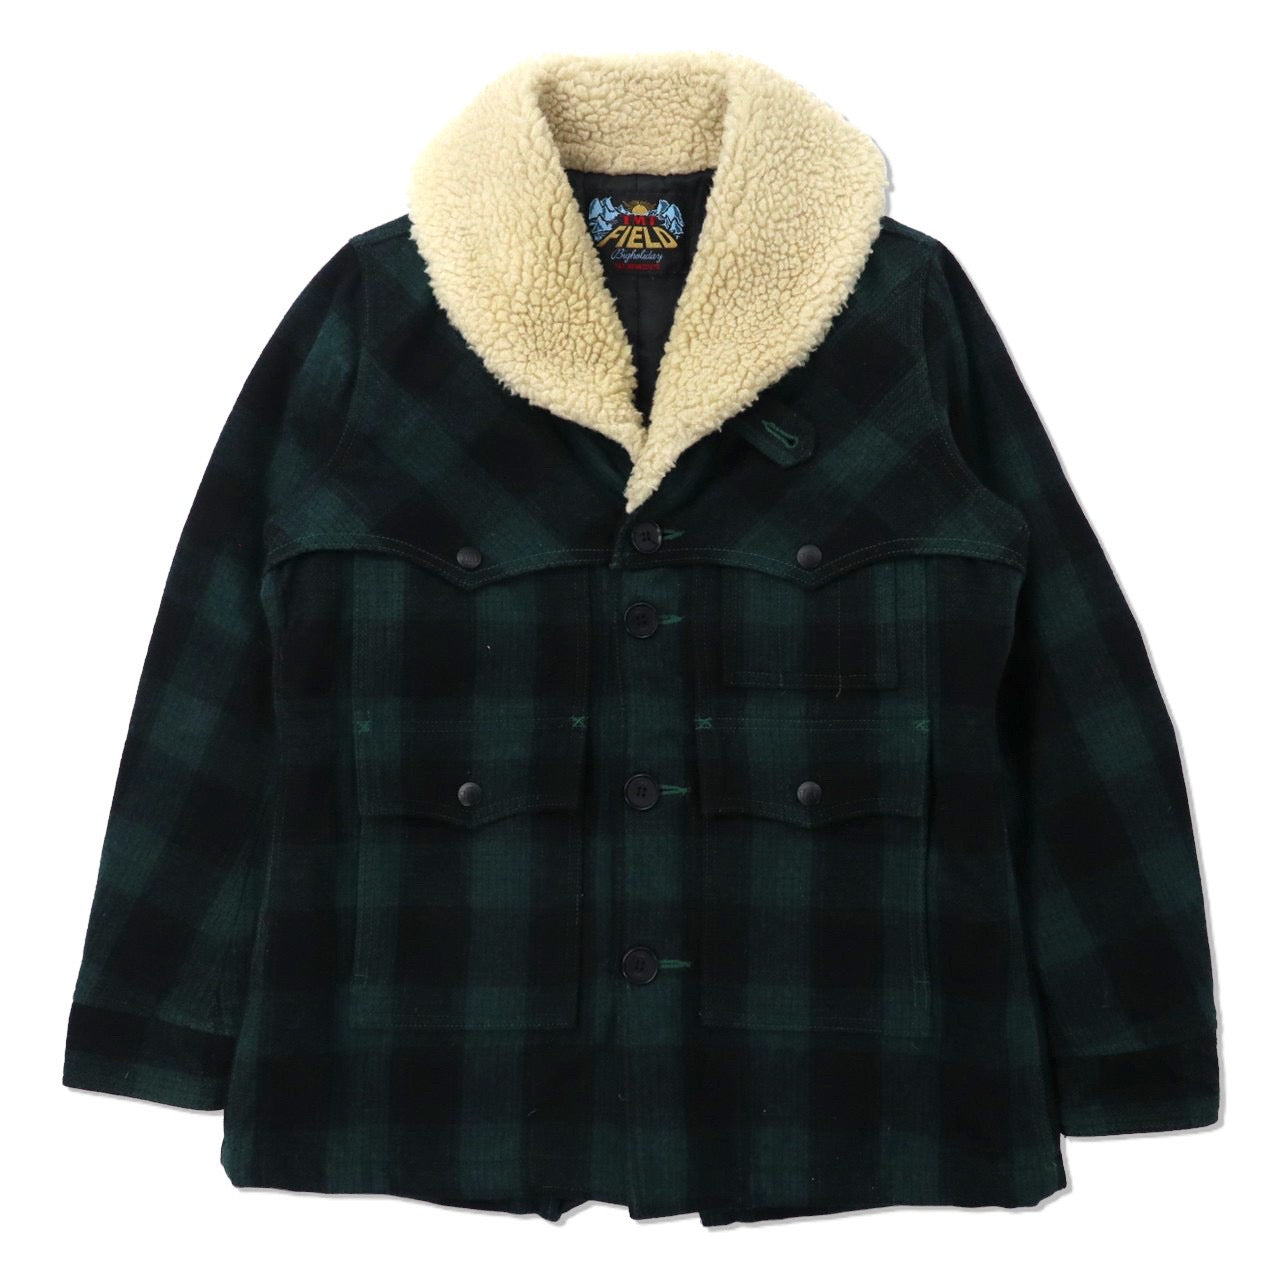 TMT Gang Coat BOA Ranch Coat M Green CHECKED Wool TJK-F1306 Japan MADE